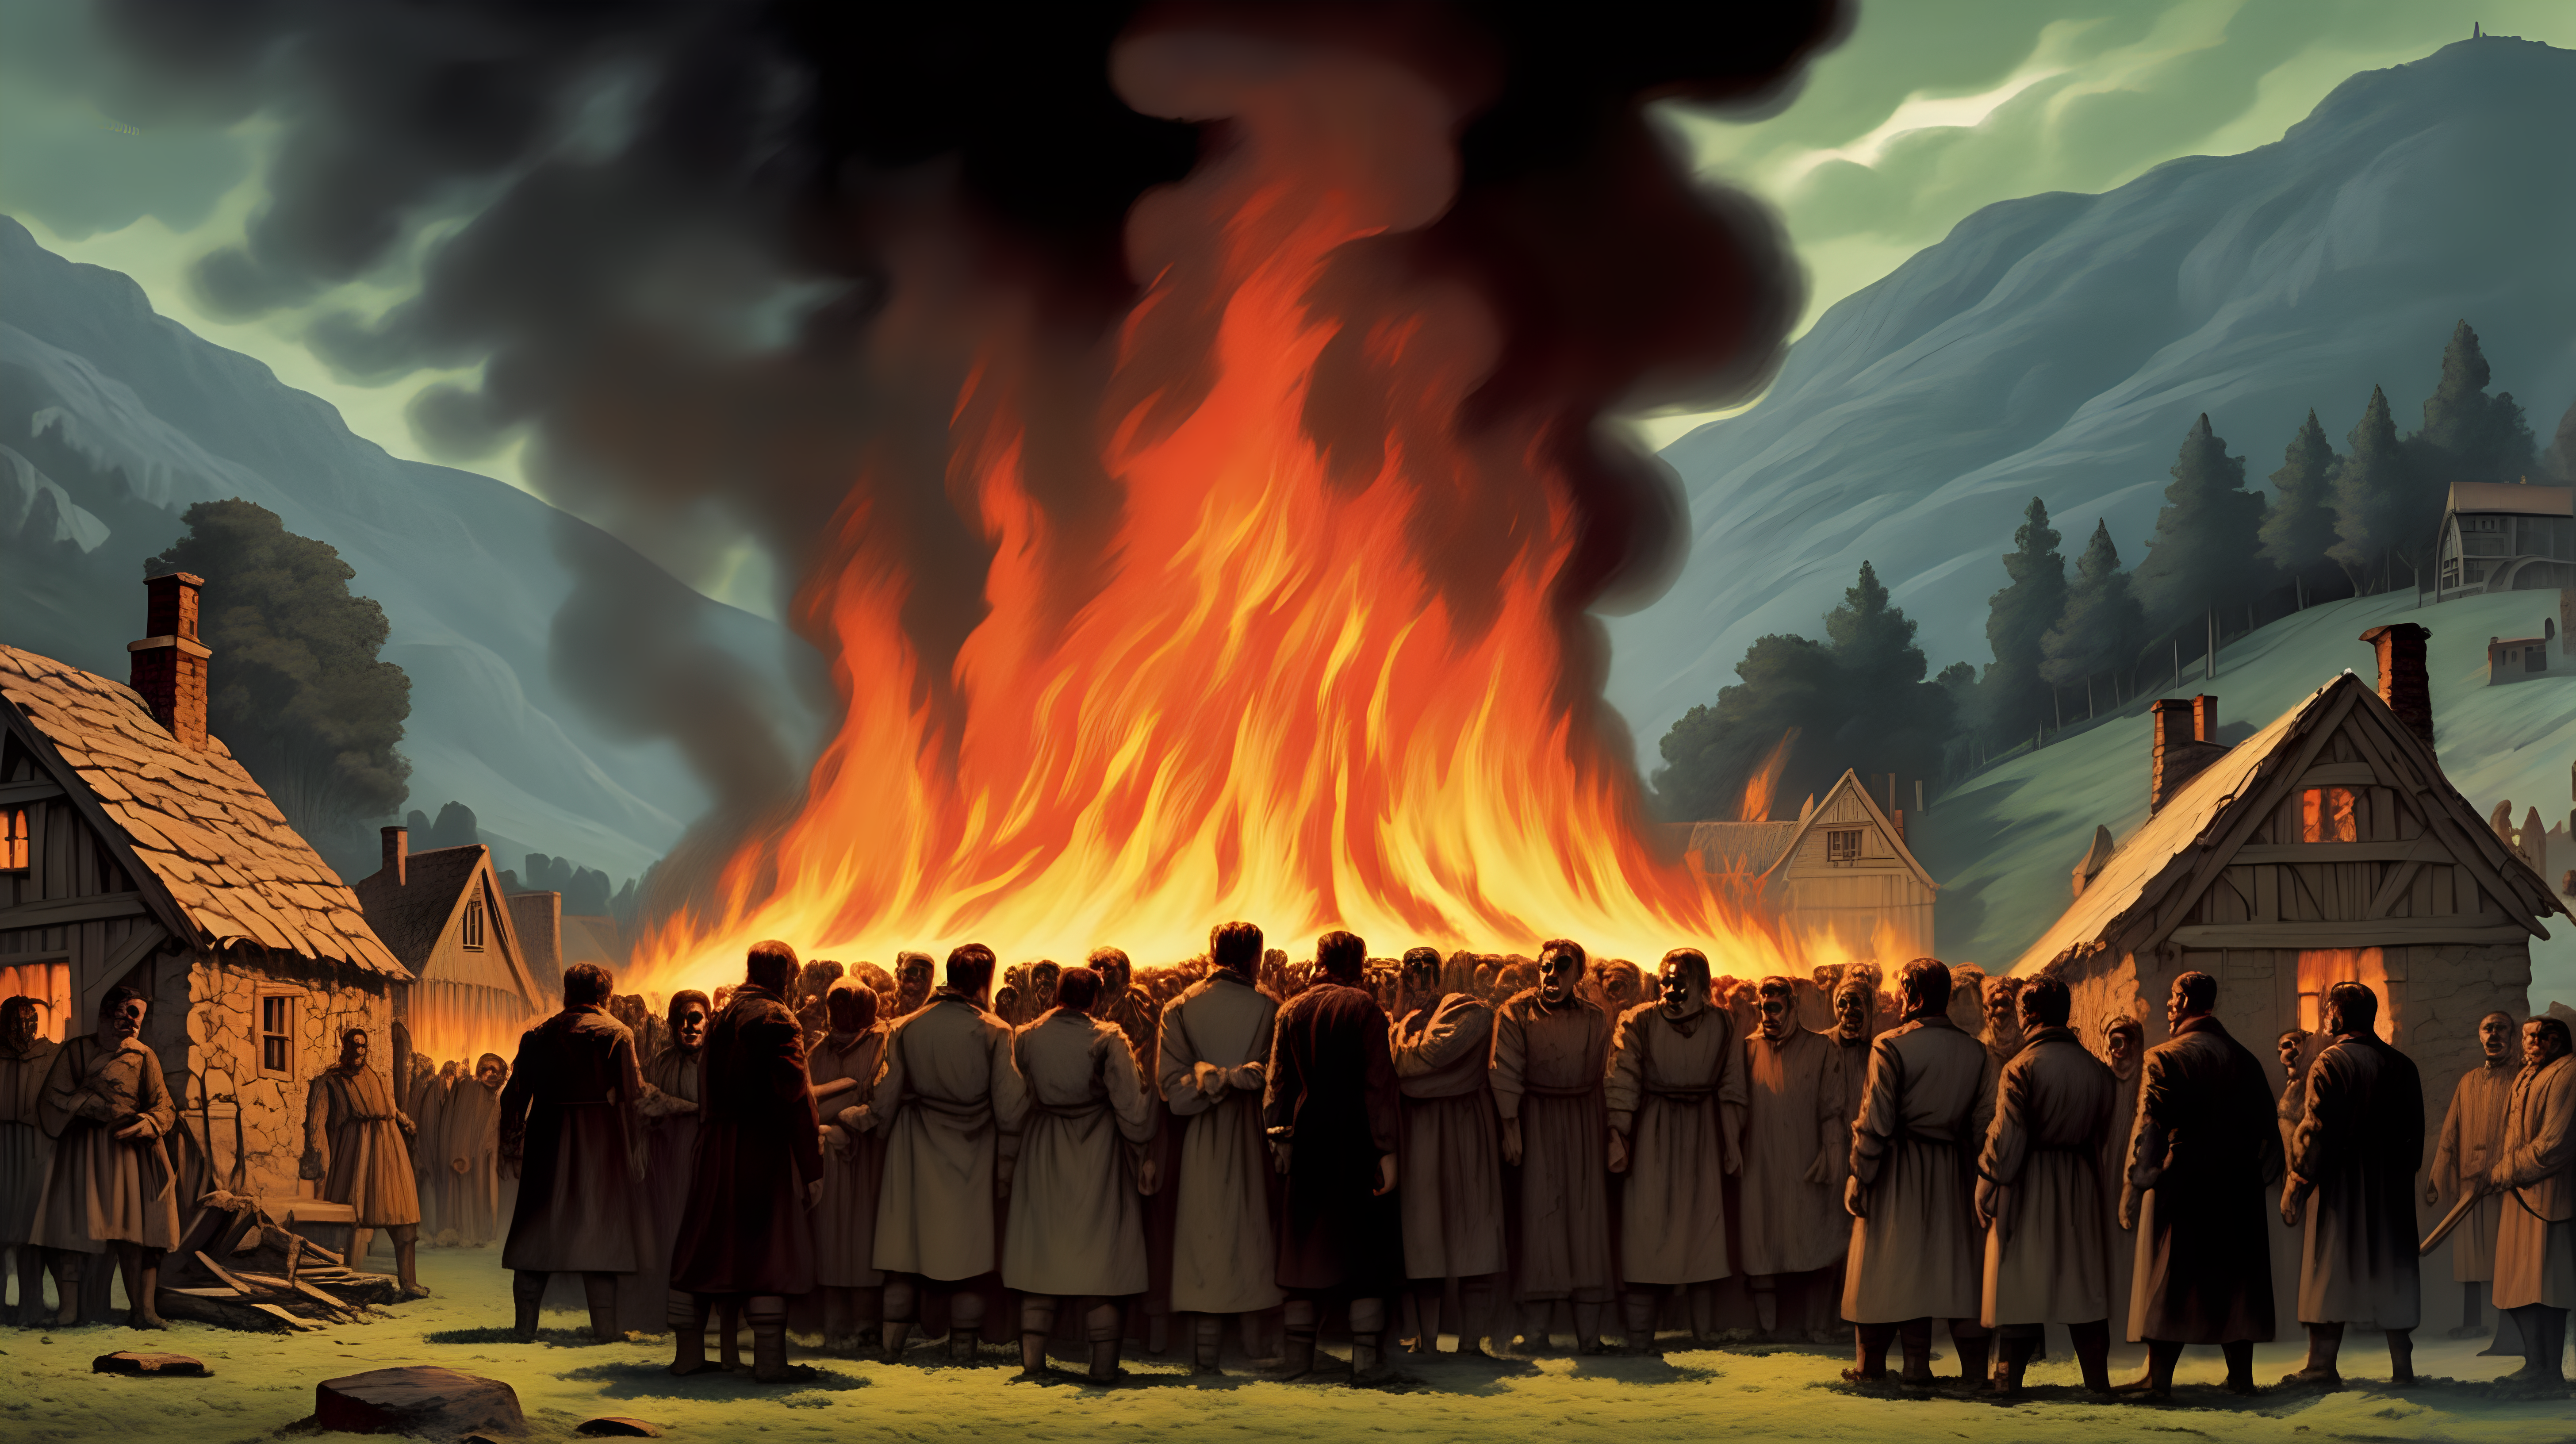 Frankenstein burning villagers